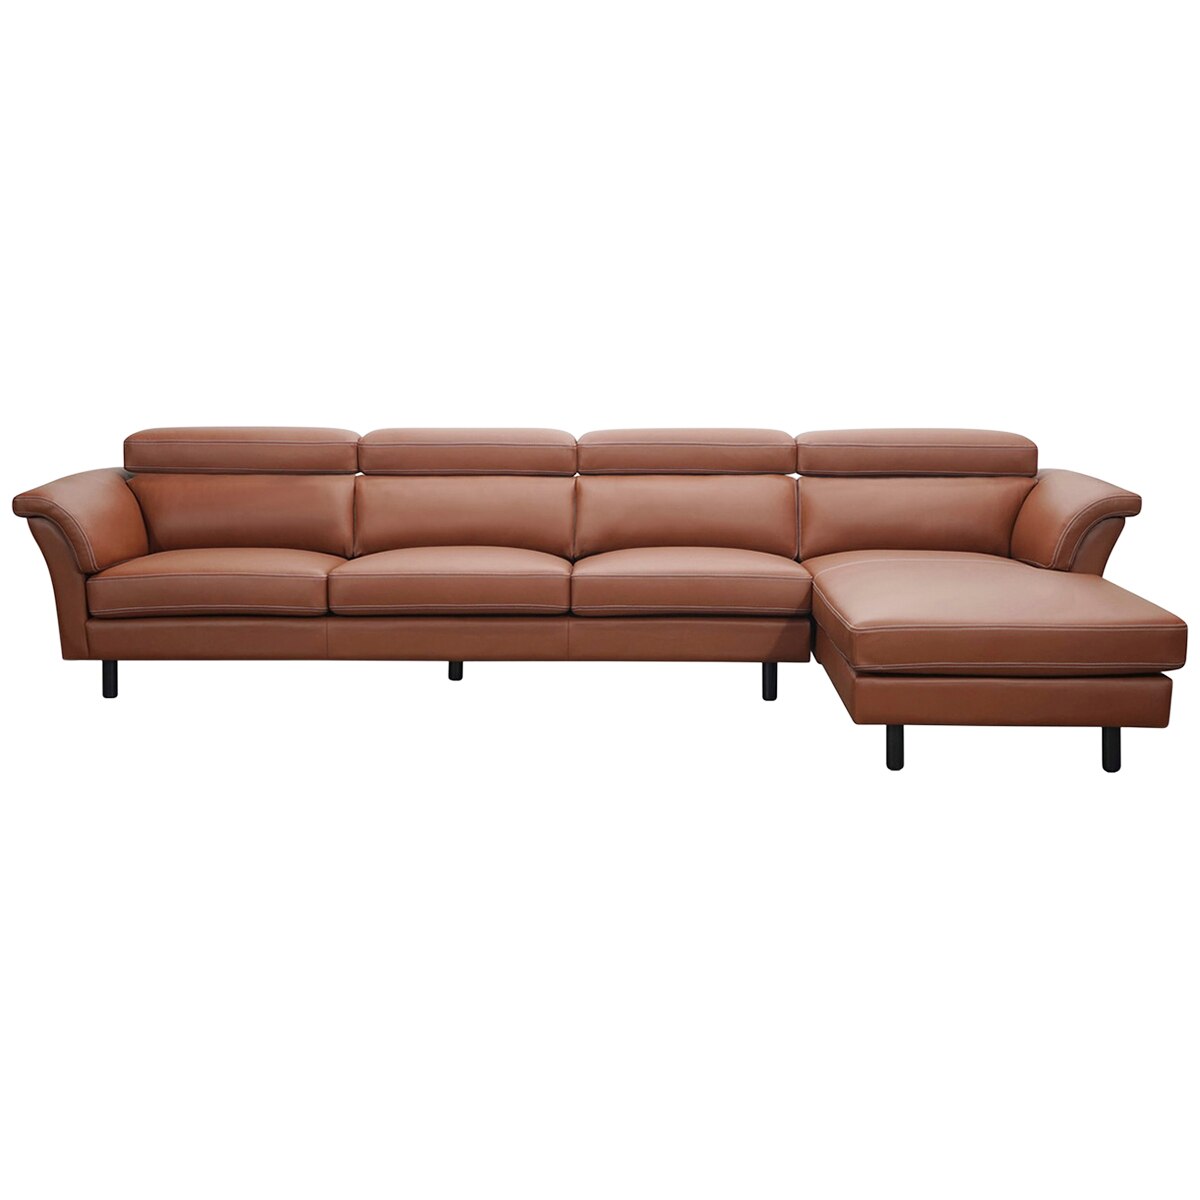 Moran Carson 3-seater Leather Sofa - Premium Pecan